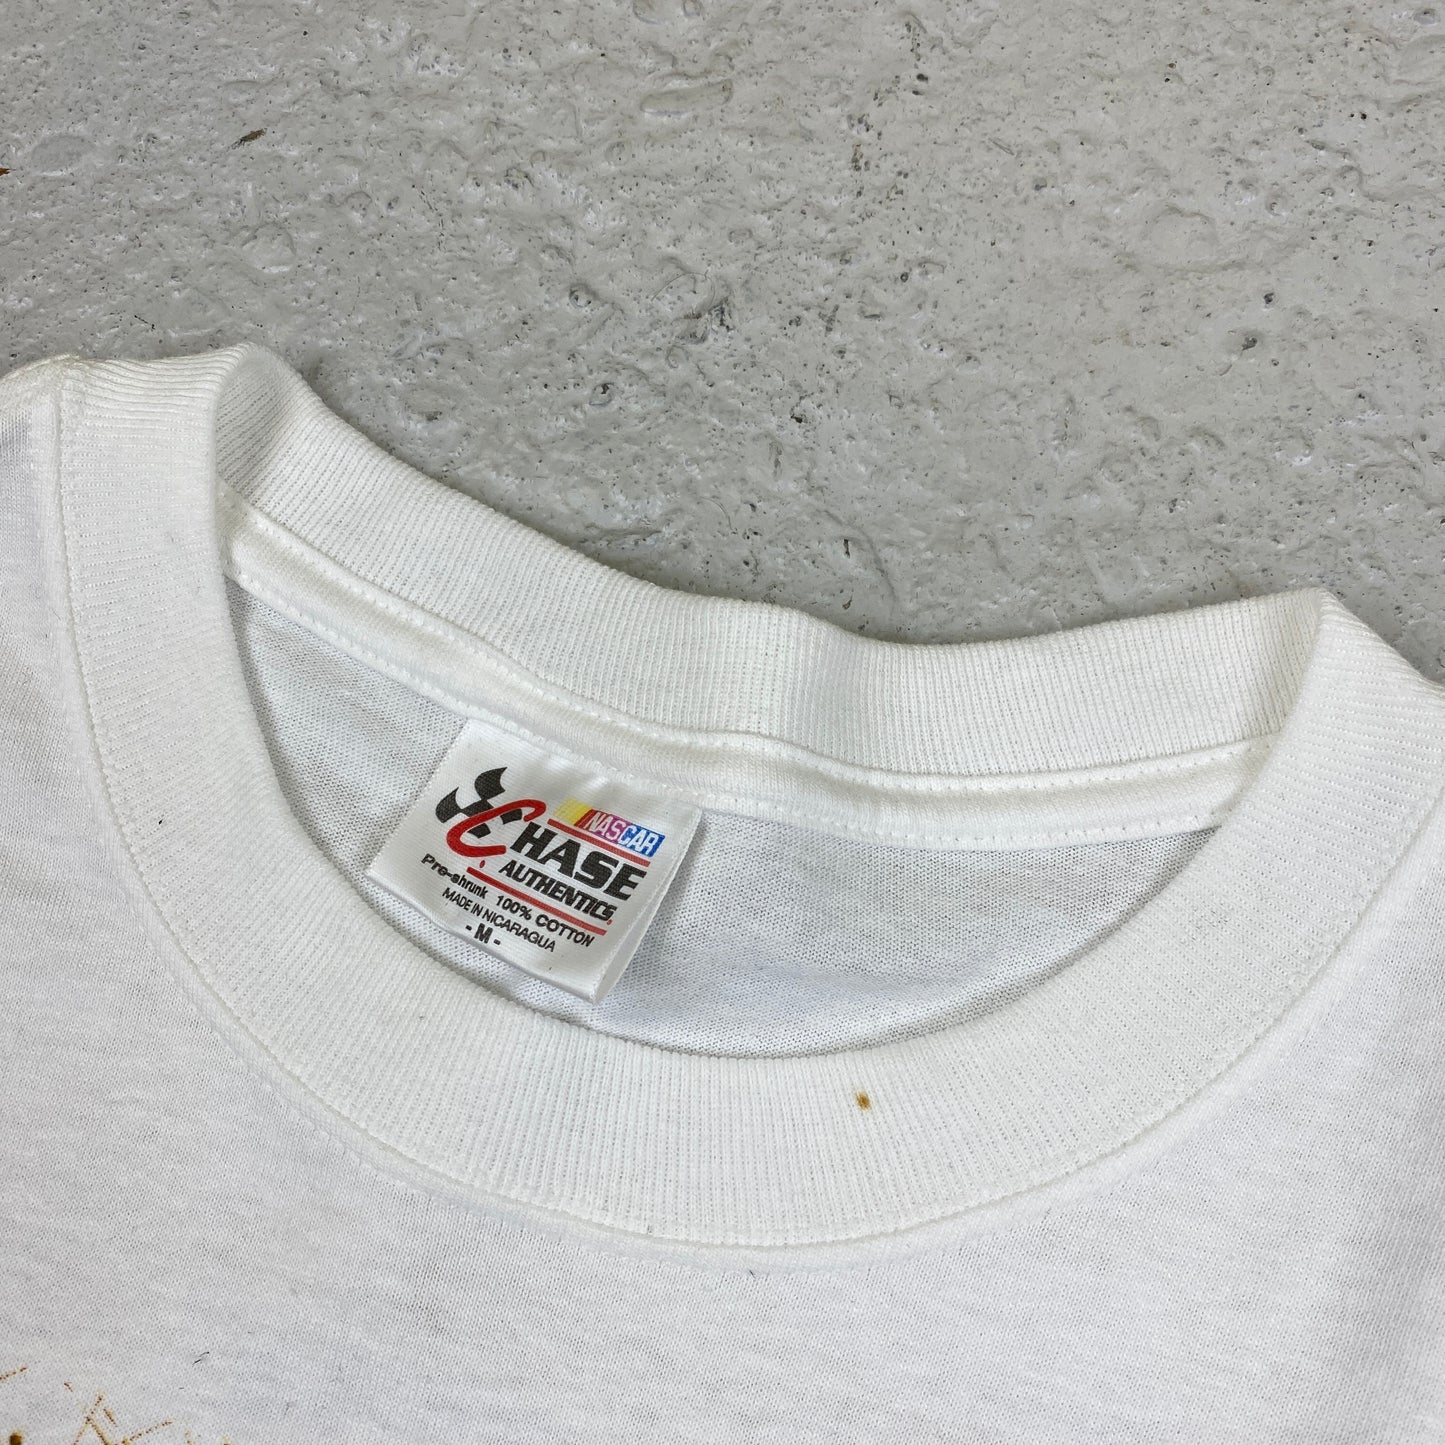 Nascar RARE Gear Jammin t-shirt (M)